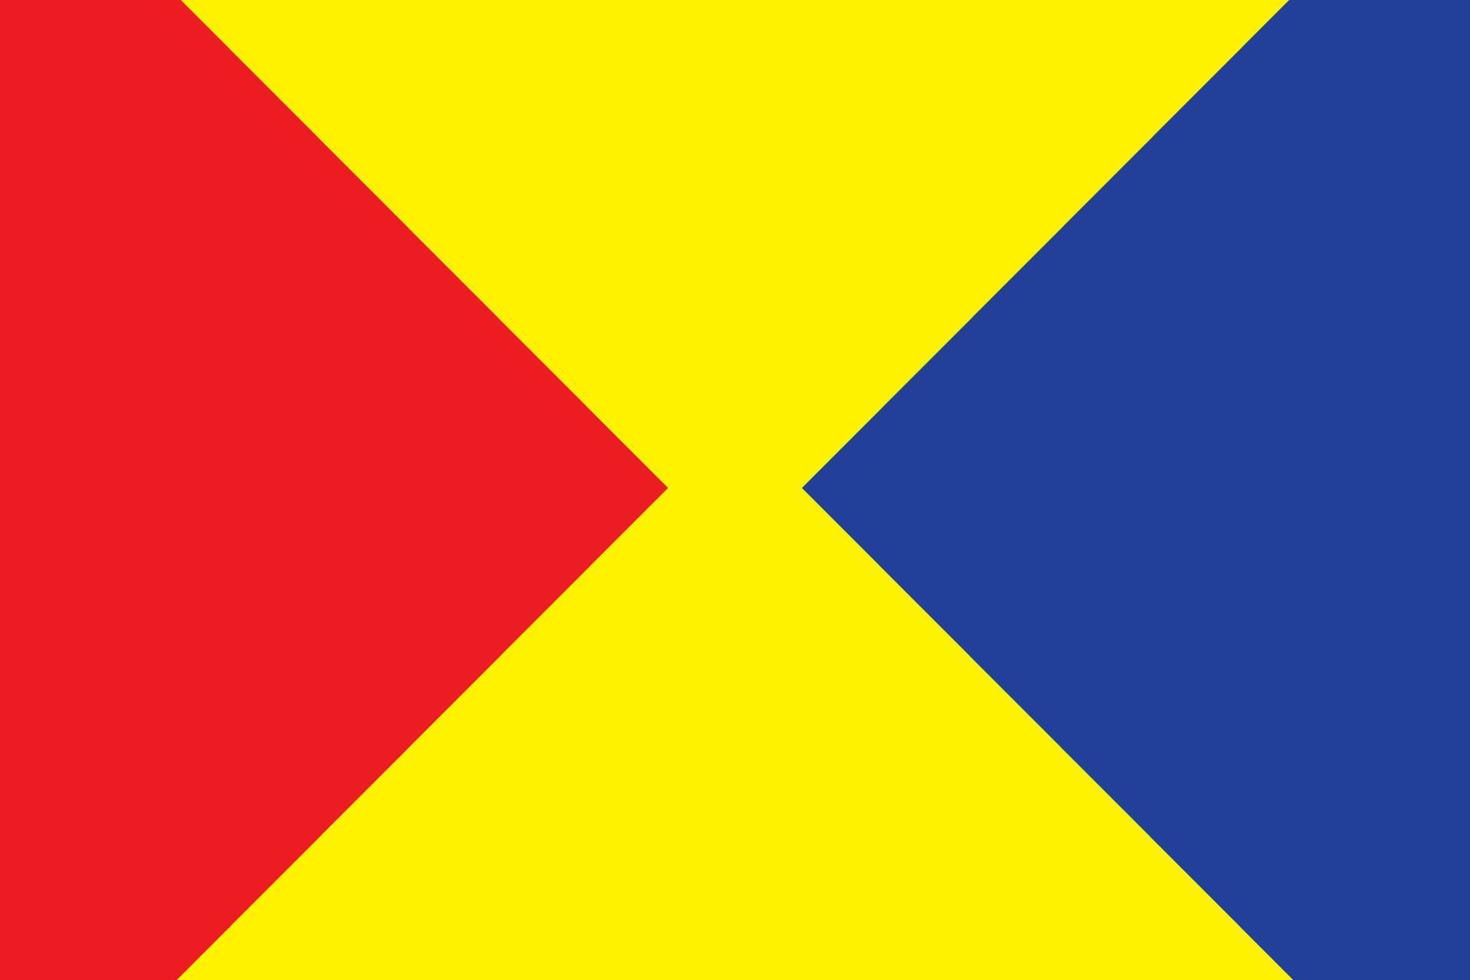 primära färger bakgrund, blå, röd och gul med geometrisk form. vektor illustration.